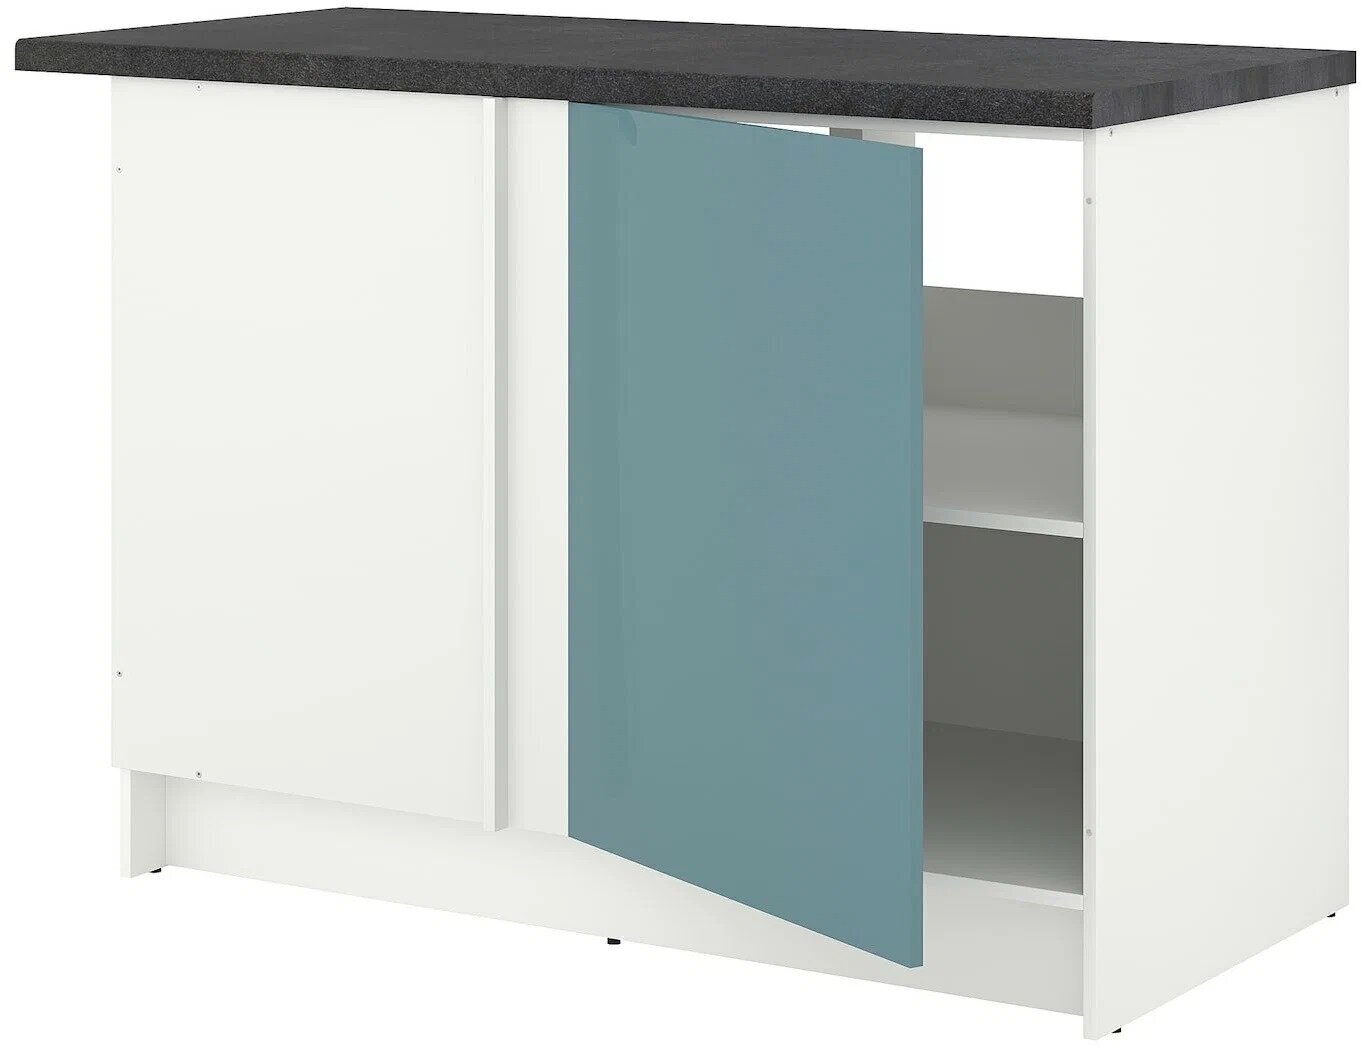 IKEA Напольный шкаф угловой, глянцевый, синяя бирюза кноксхульт / KNOXHULT. икеа